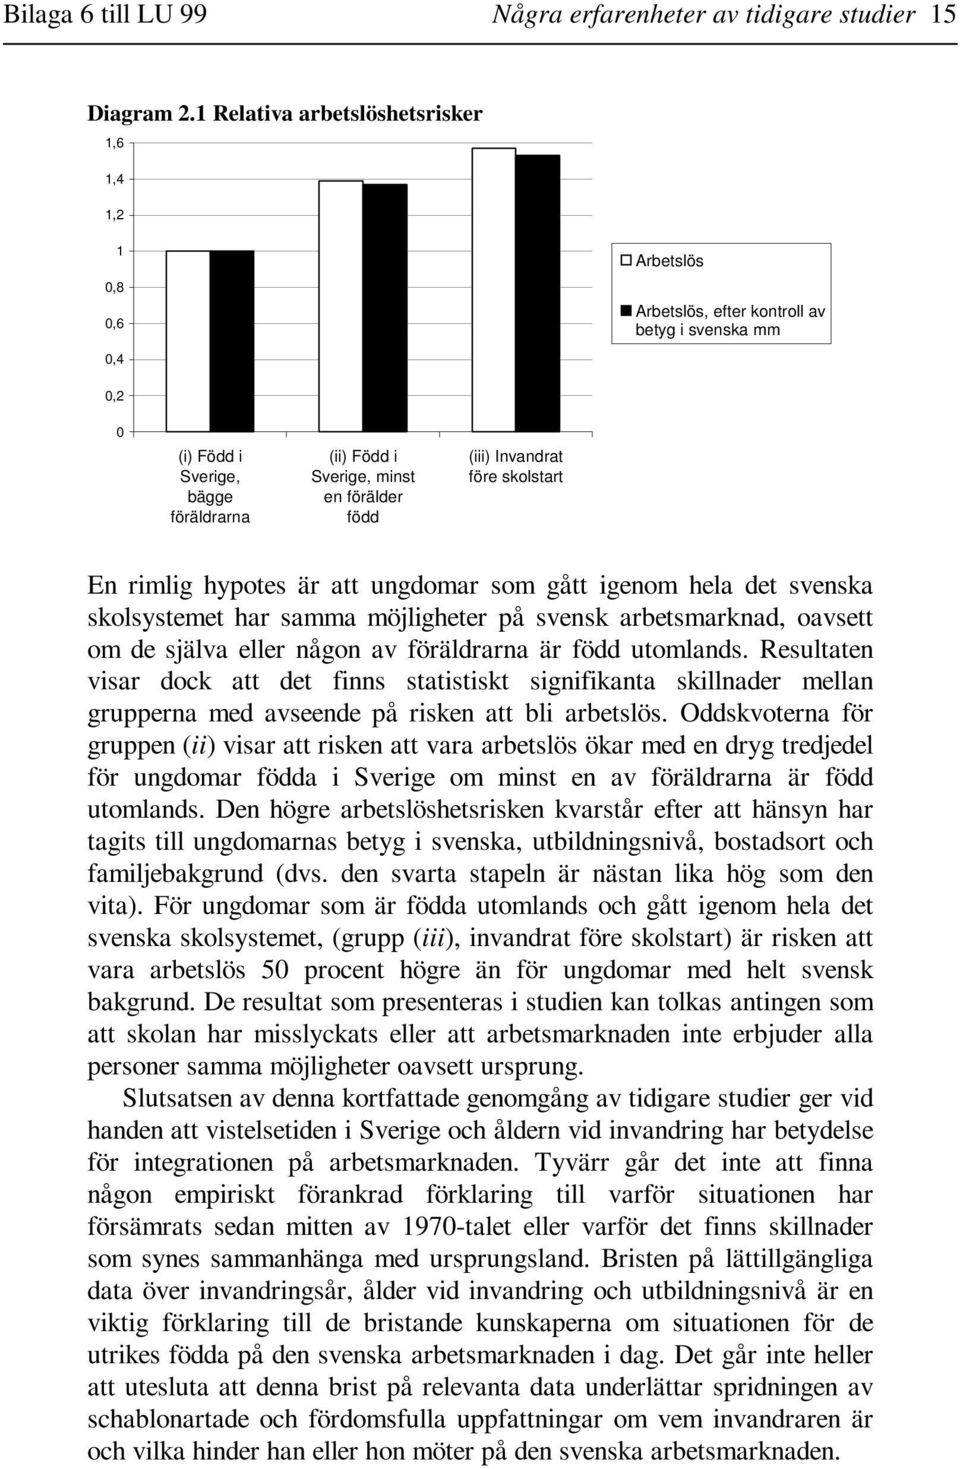 född (iii) Invandrat före skolstart En rimlig hypotes är att ungdomar som gått igenom hela det svenska skolsystemet har samma möjligheter på svensk arbetsmarknad, oavsett om de själva eller någon av